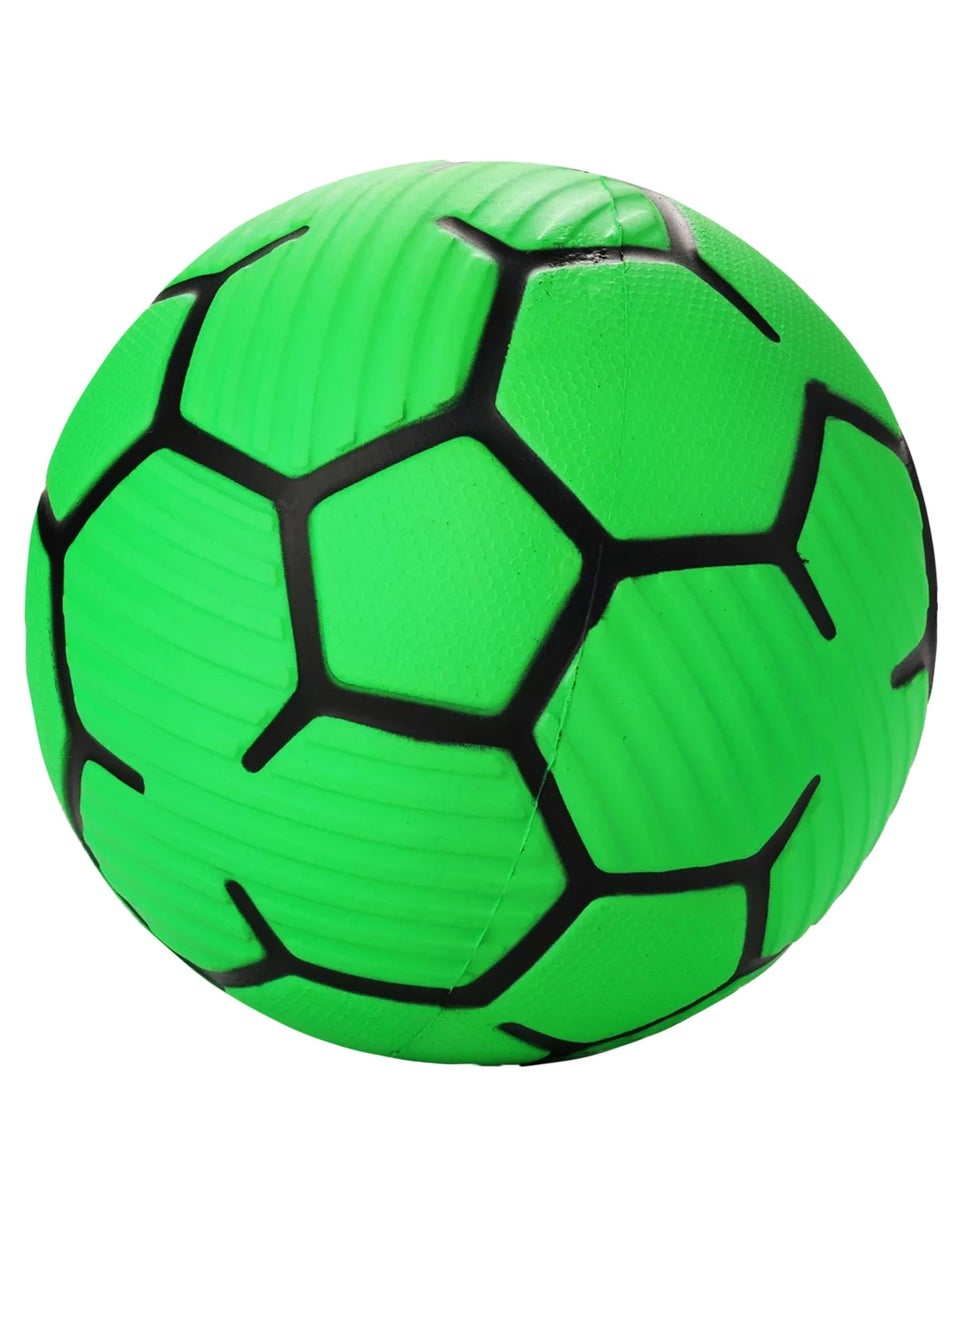 Nerf Green Proshot Football